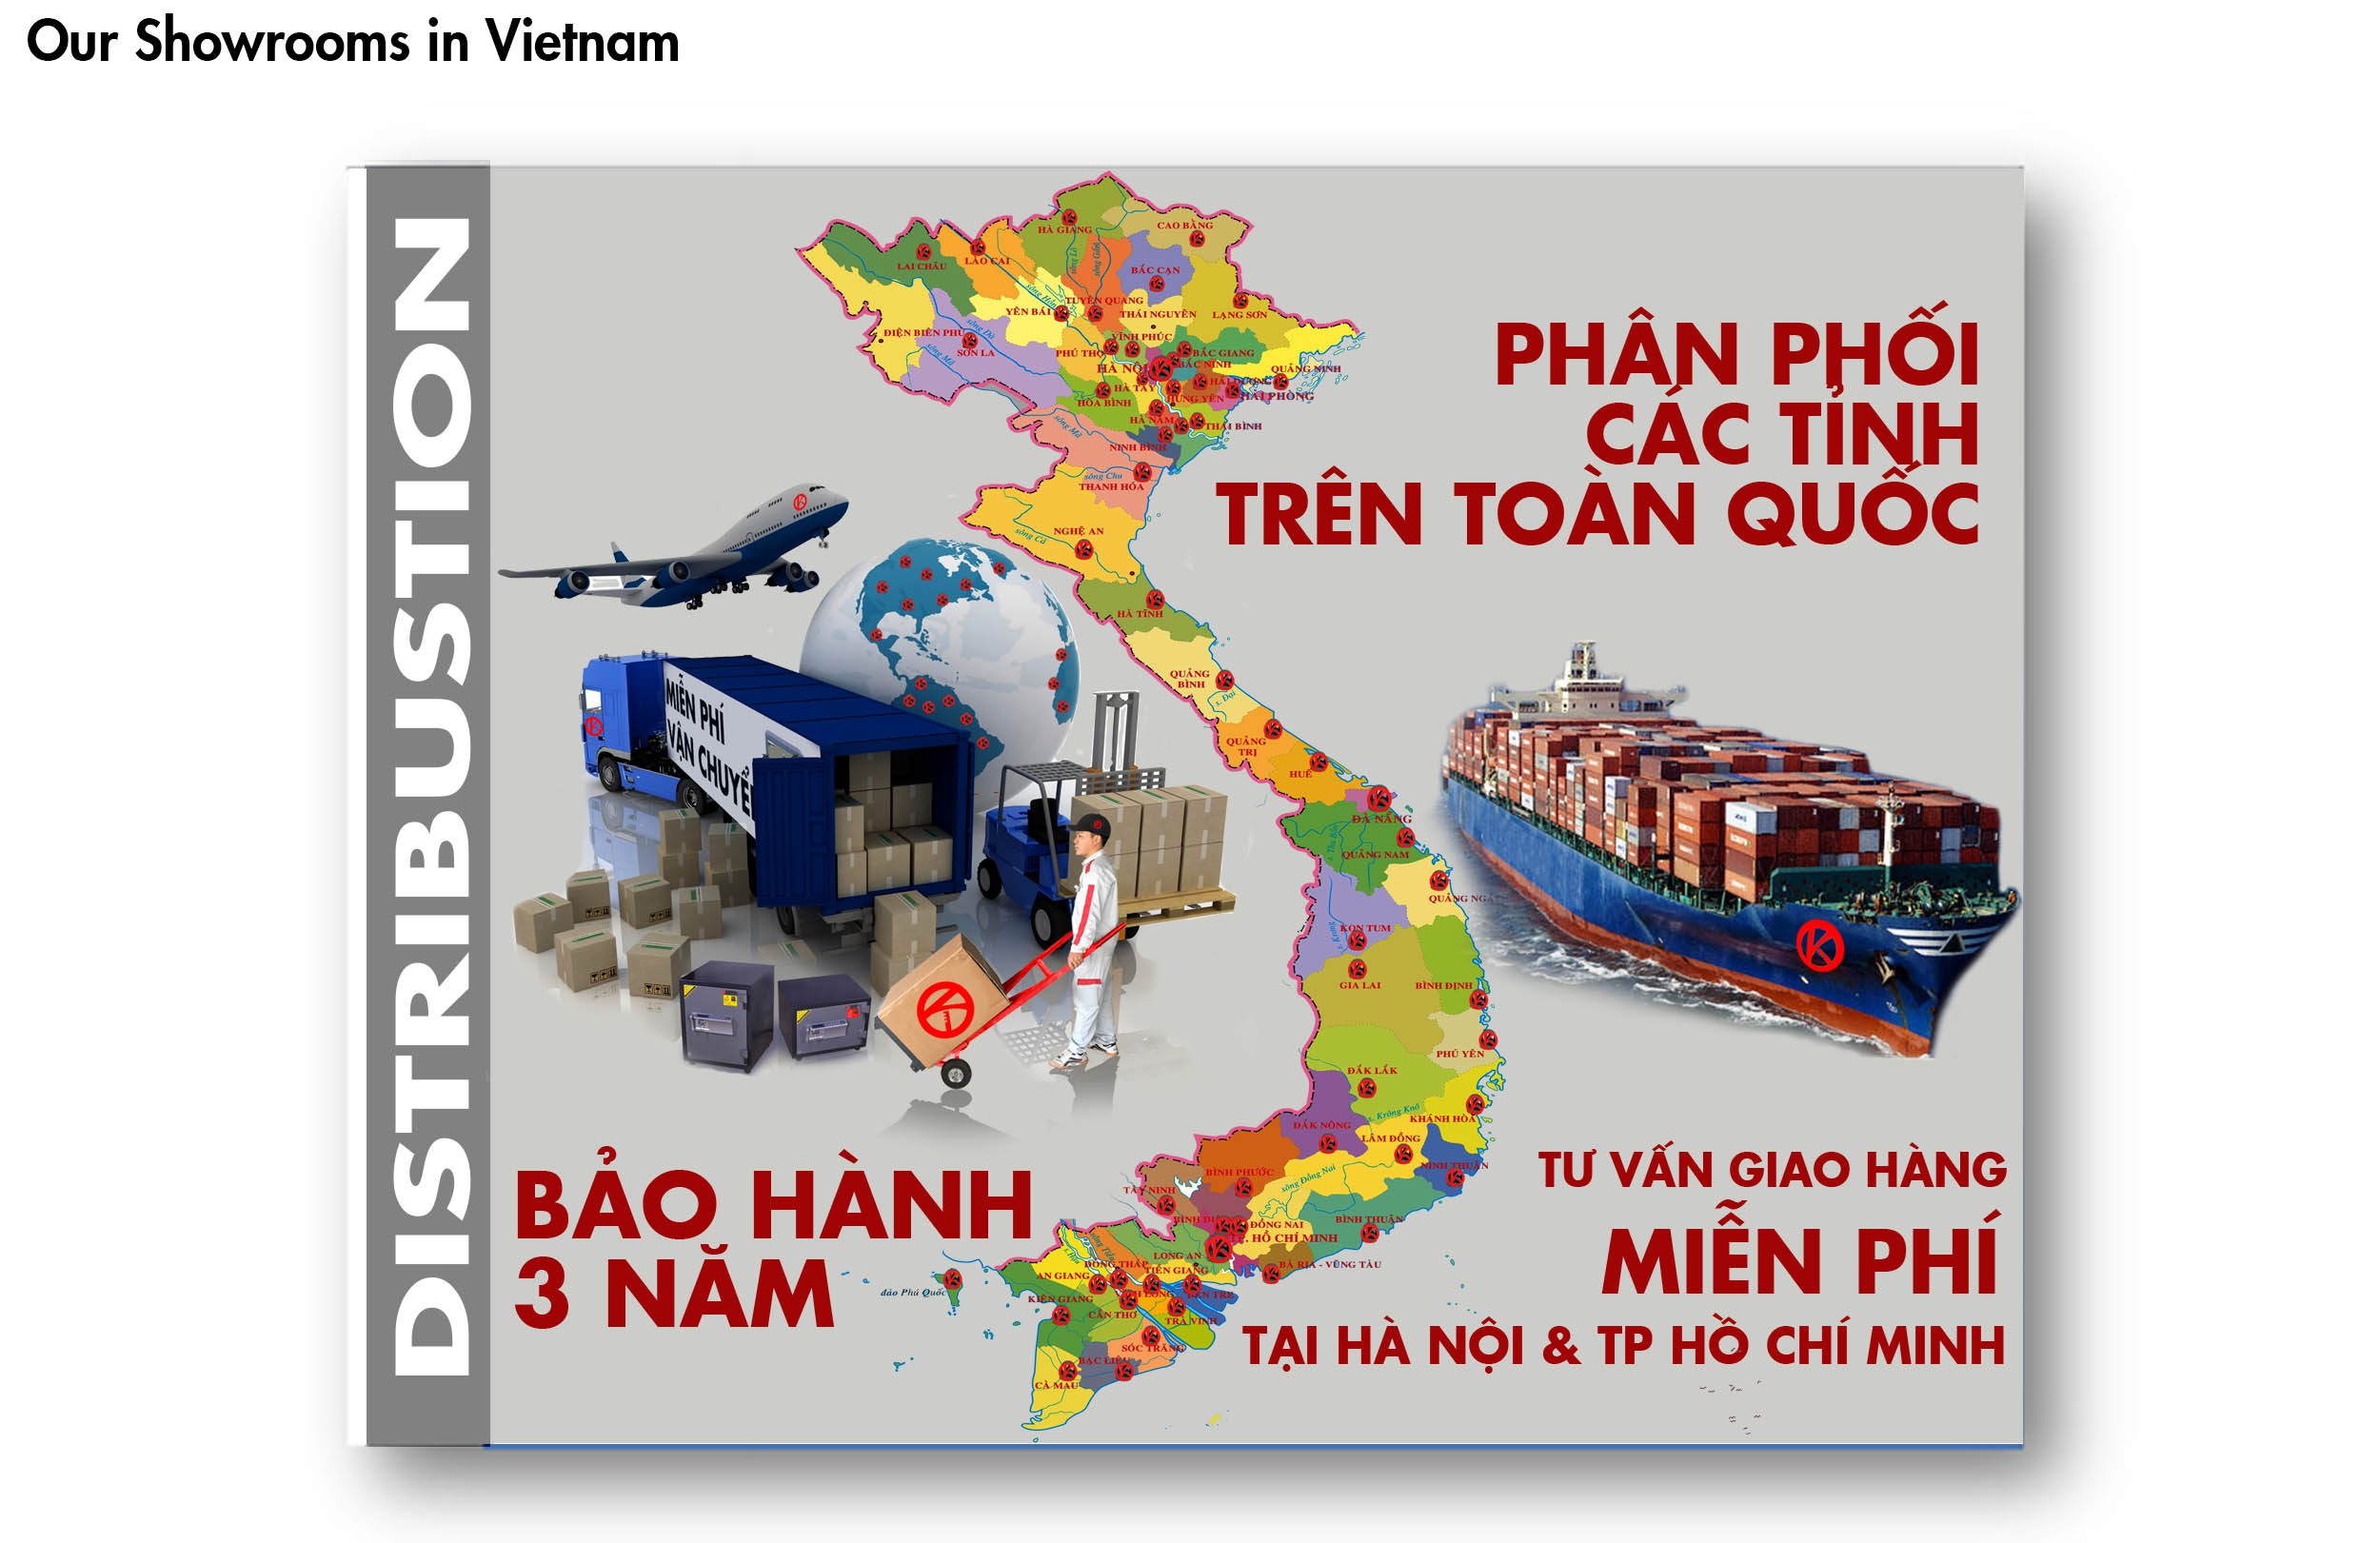 Két Sắt Việt Nam Hàng Cao Cấp Chất Lượng Số 1 VN